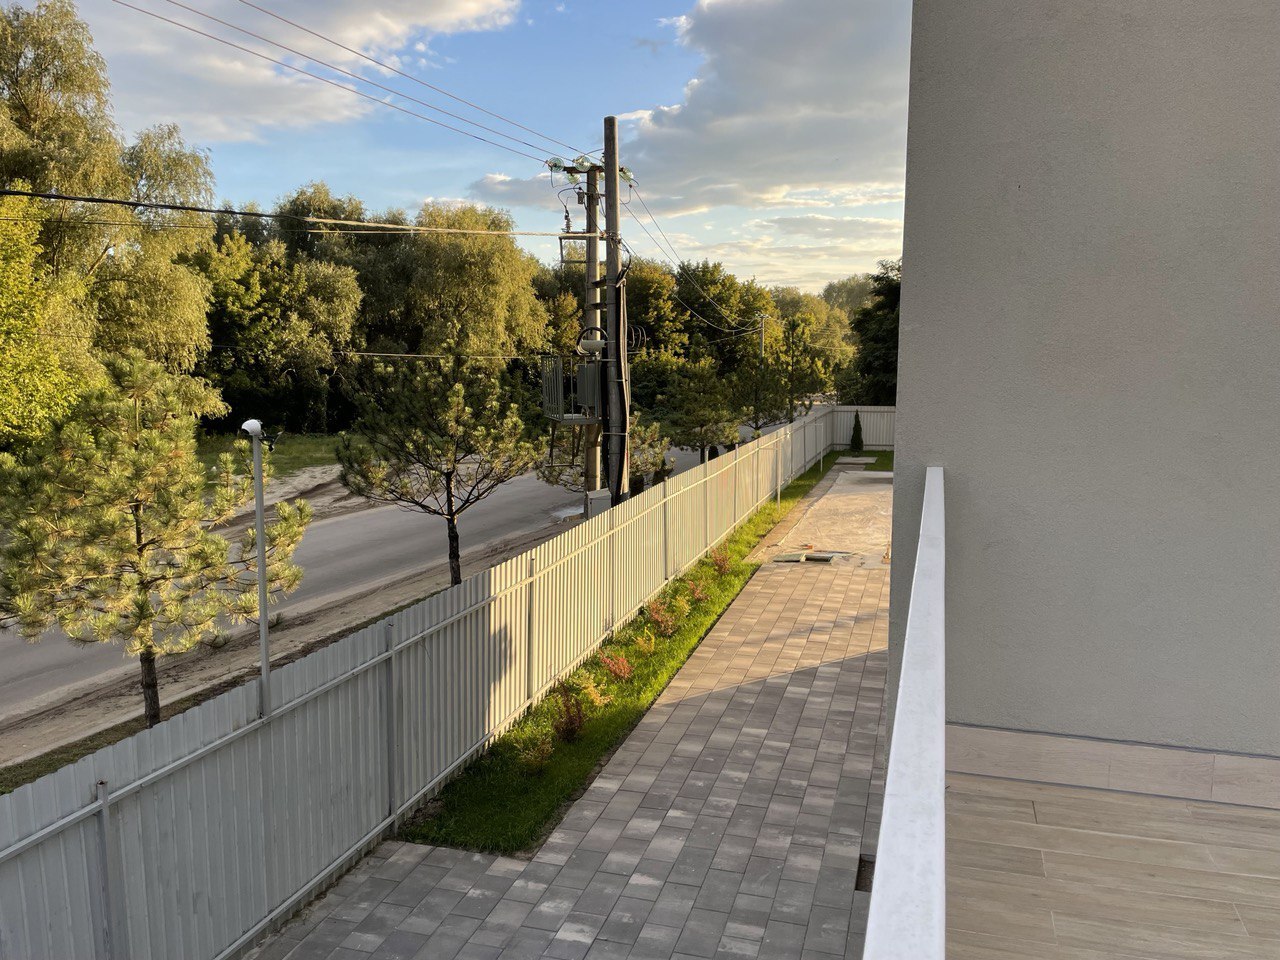 Сучасний будинок у Бортничах, Київ: Унікальна пропозиція (вихід до озера